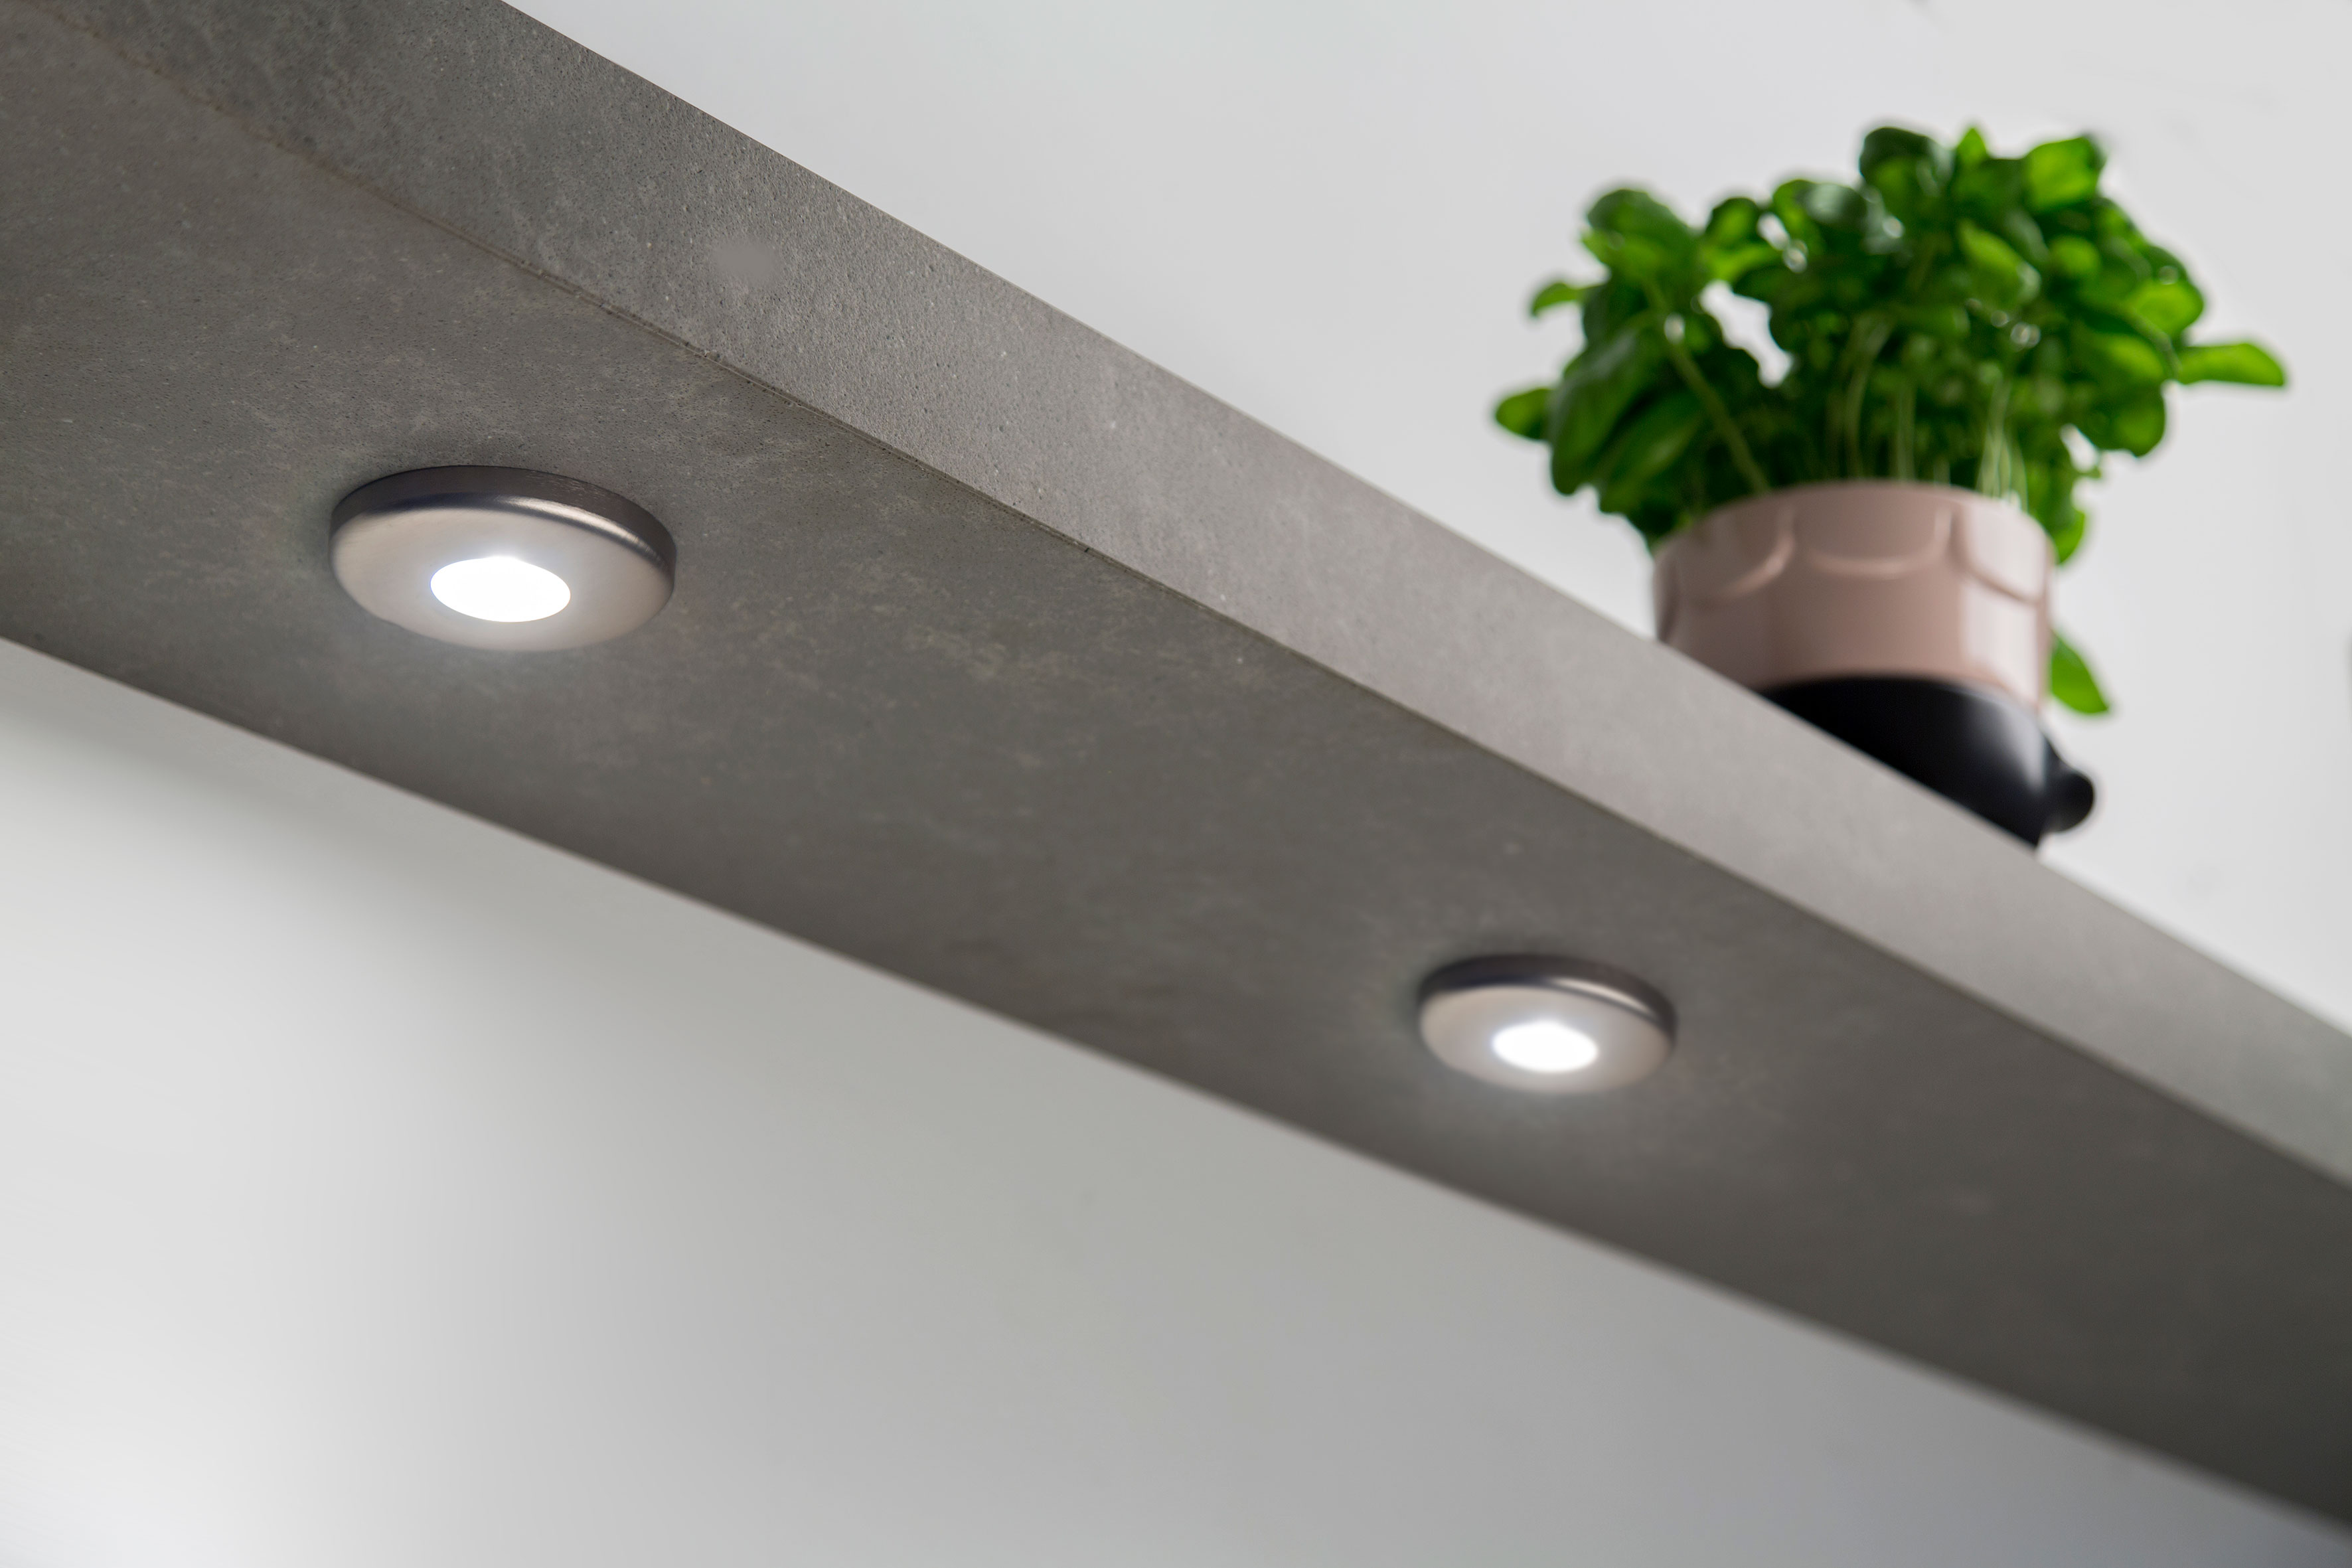 Lavanto ledverlichting in de keuken met dimbare ledspots - via dekker Zevenhuizen